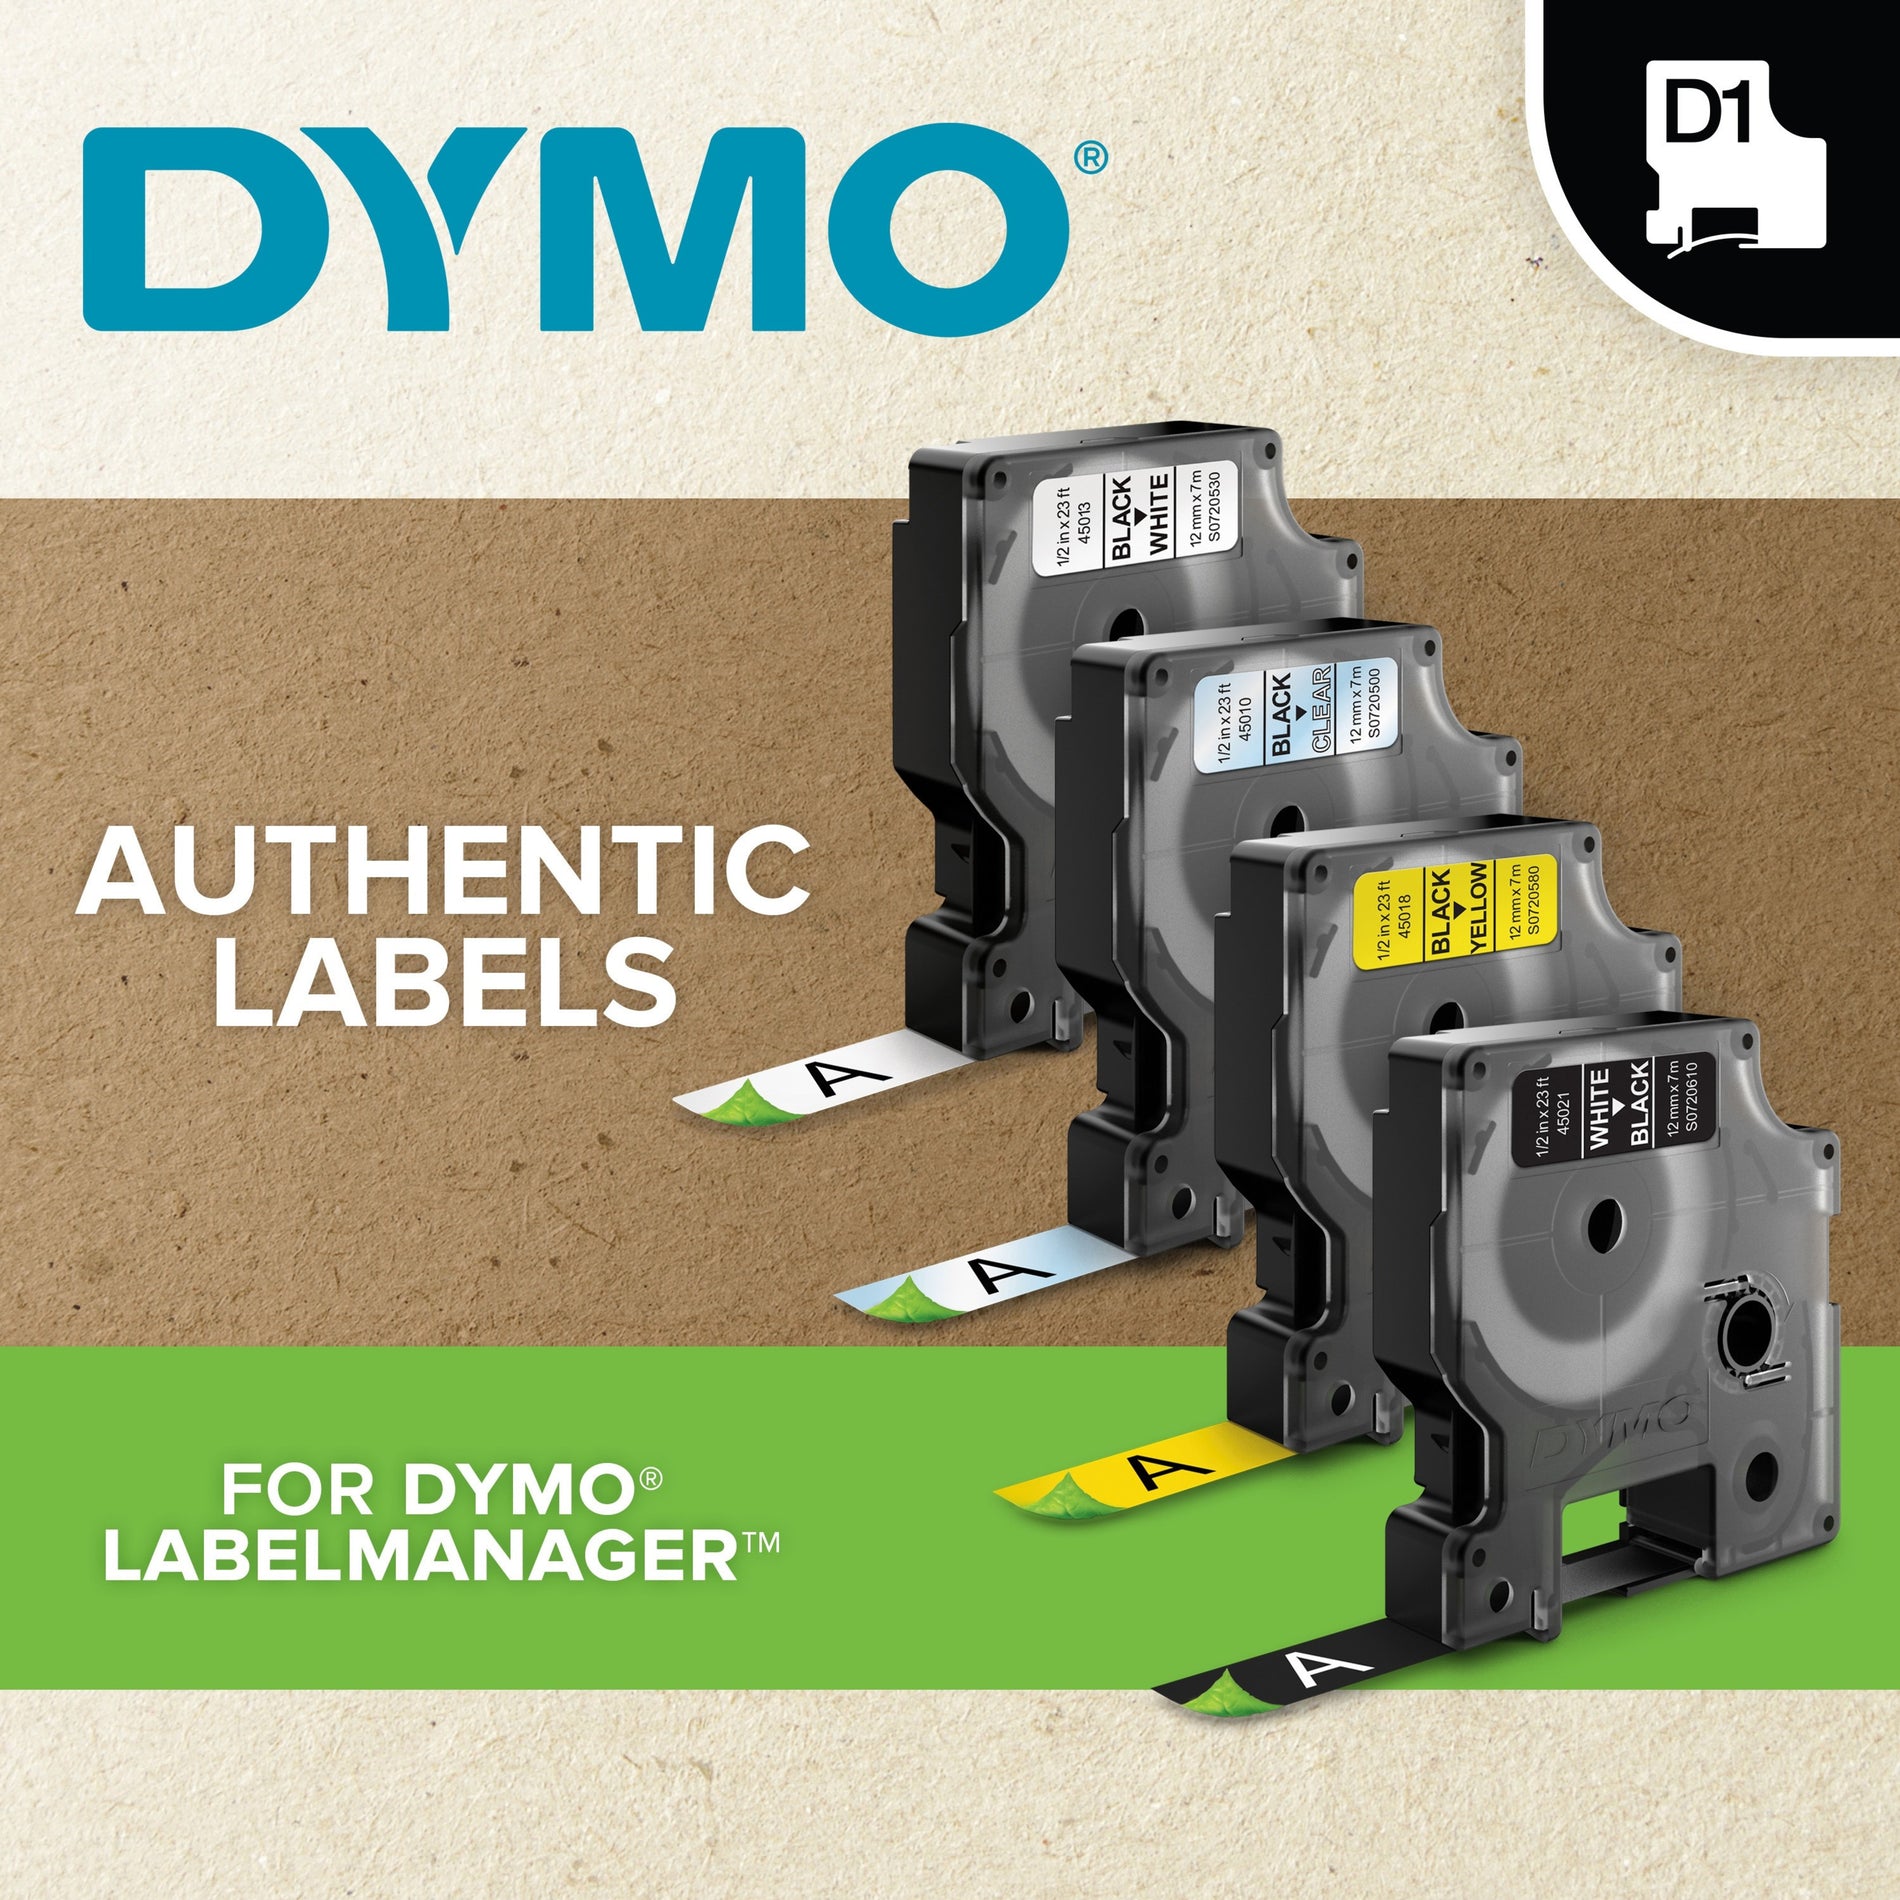 Dymo 45803 D1 Electronic Tape Cartridge, 3/4"x23' Size, Black/White